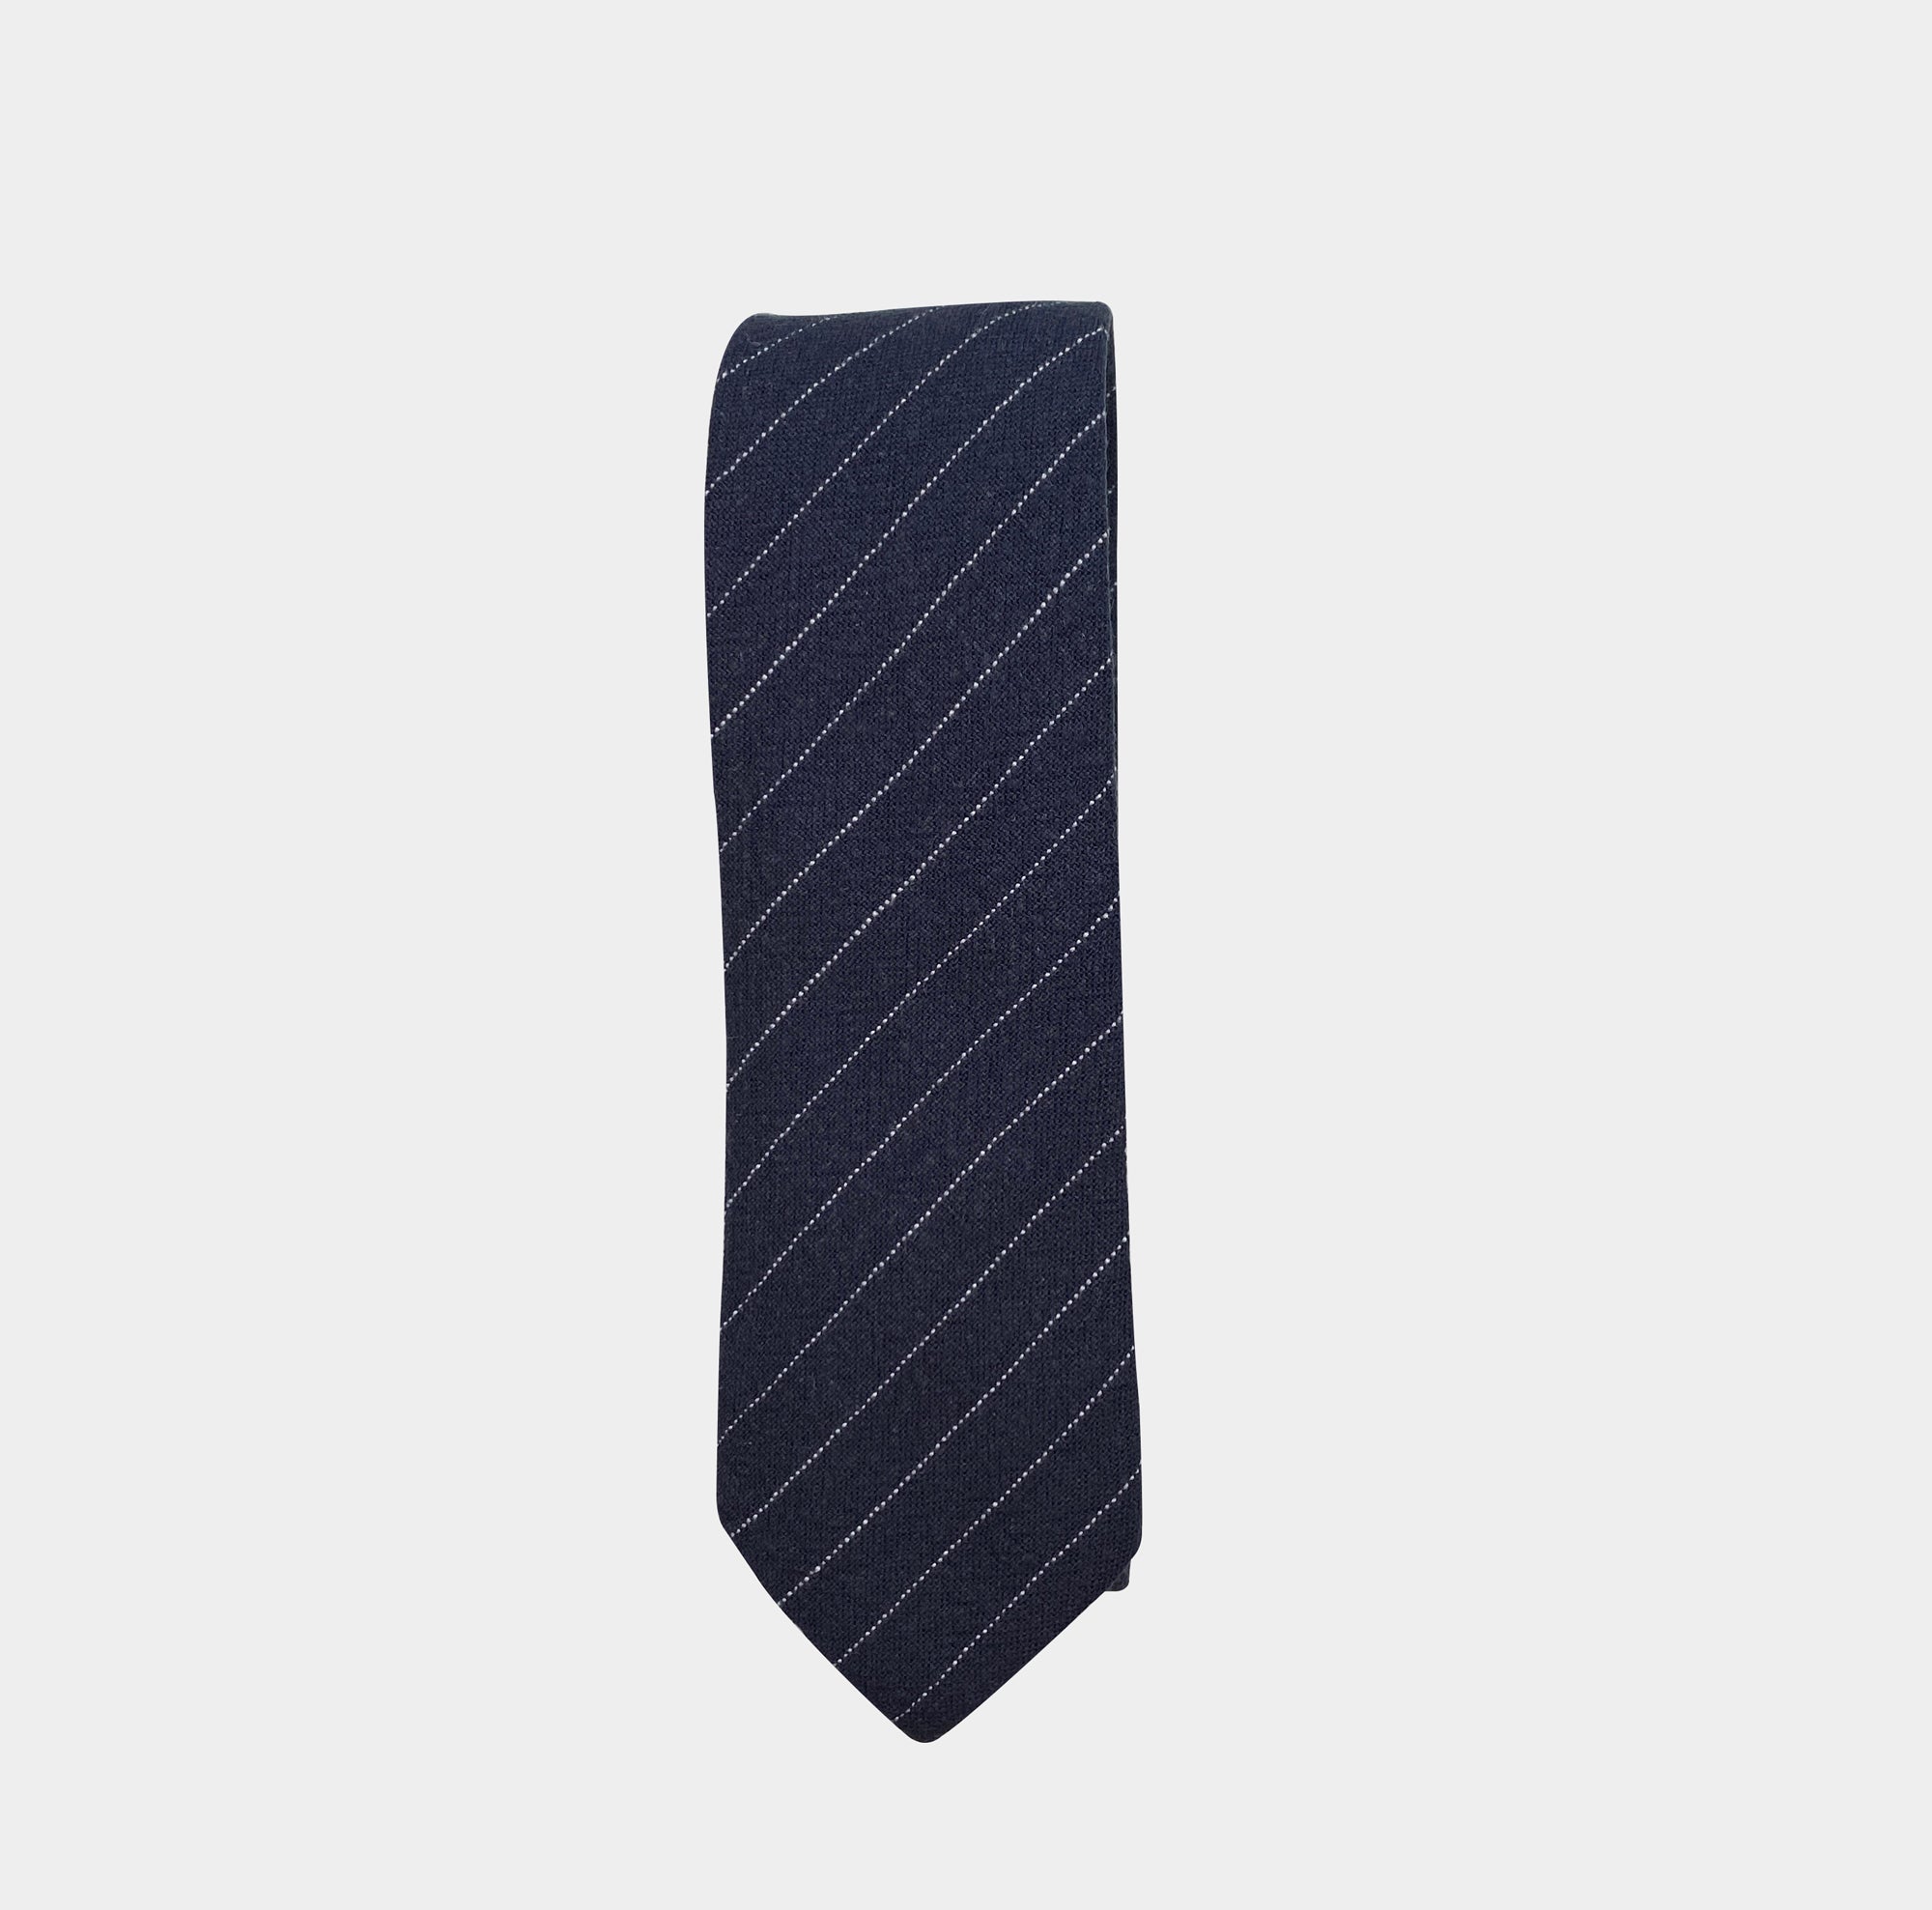 BANKS - Men's Tie